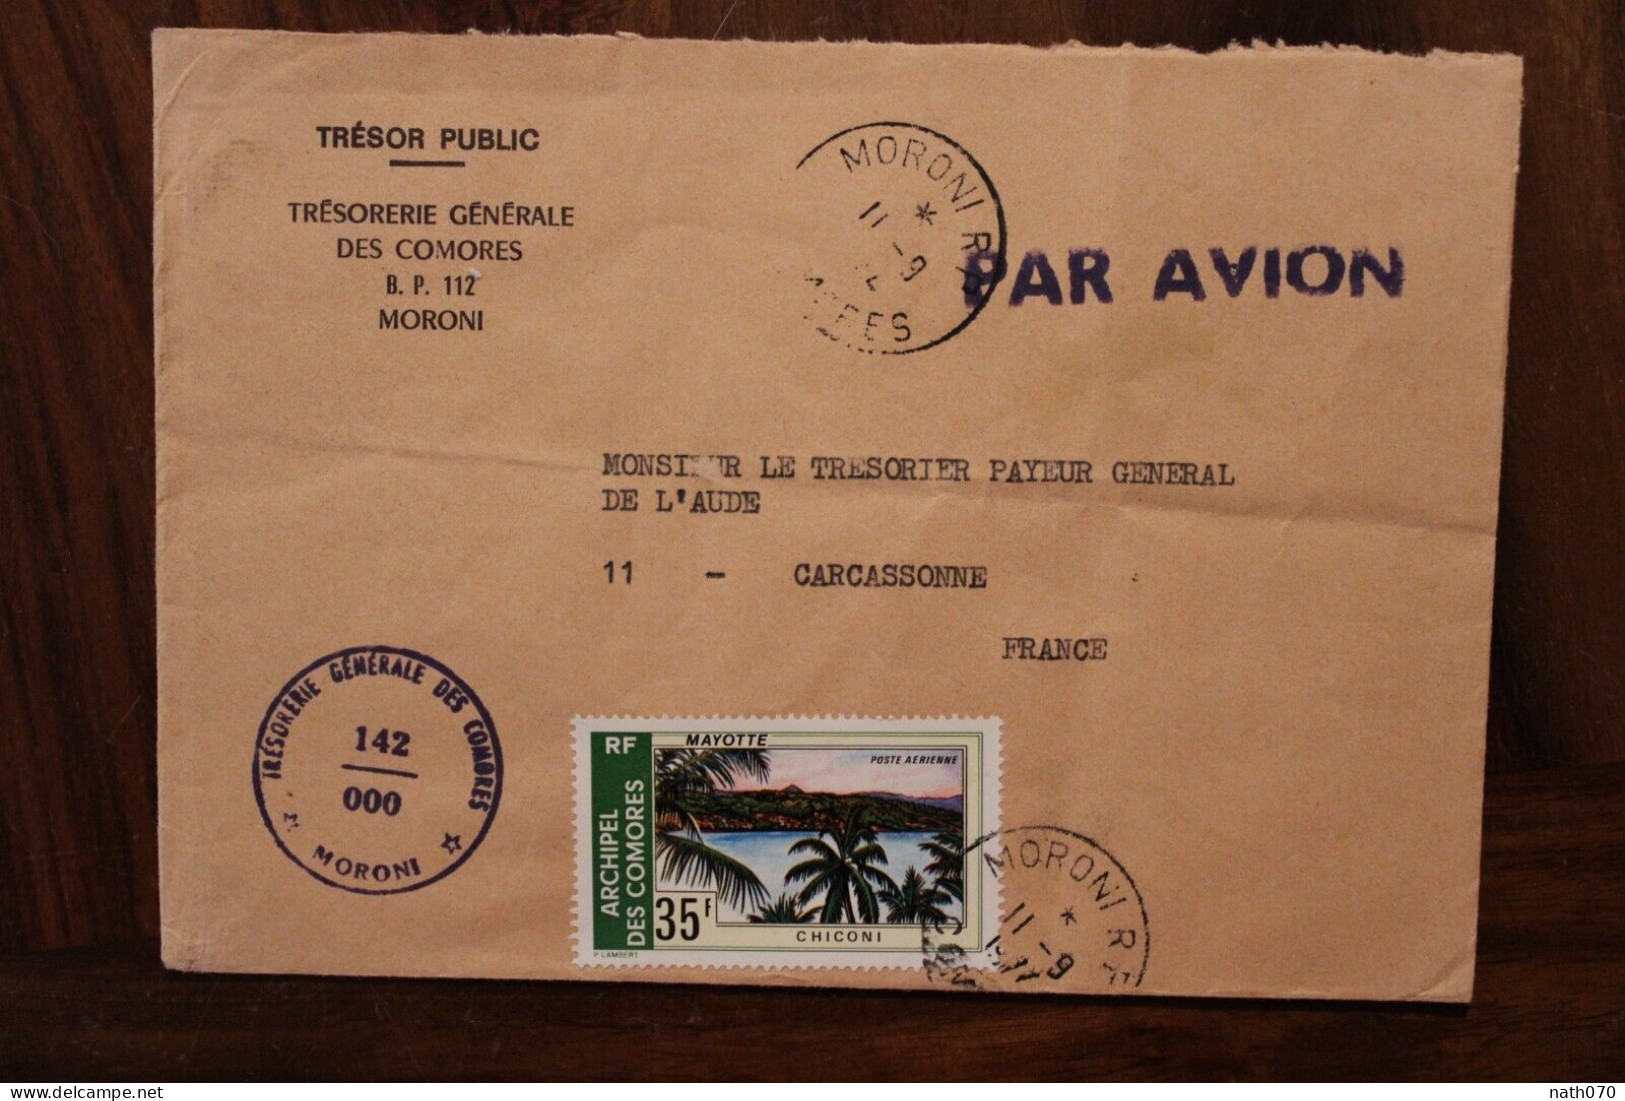 1977 Comores Trésorerie Générale Pour France Carcassonne Cover Air Mail Poste Aerienne Par Avion Timbre Mayotte - Comores (1975-...)